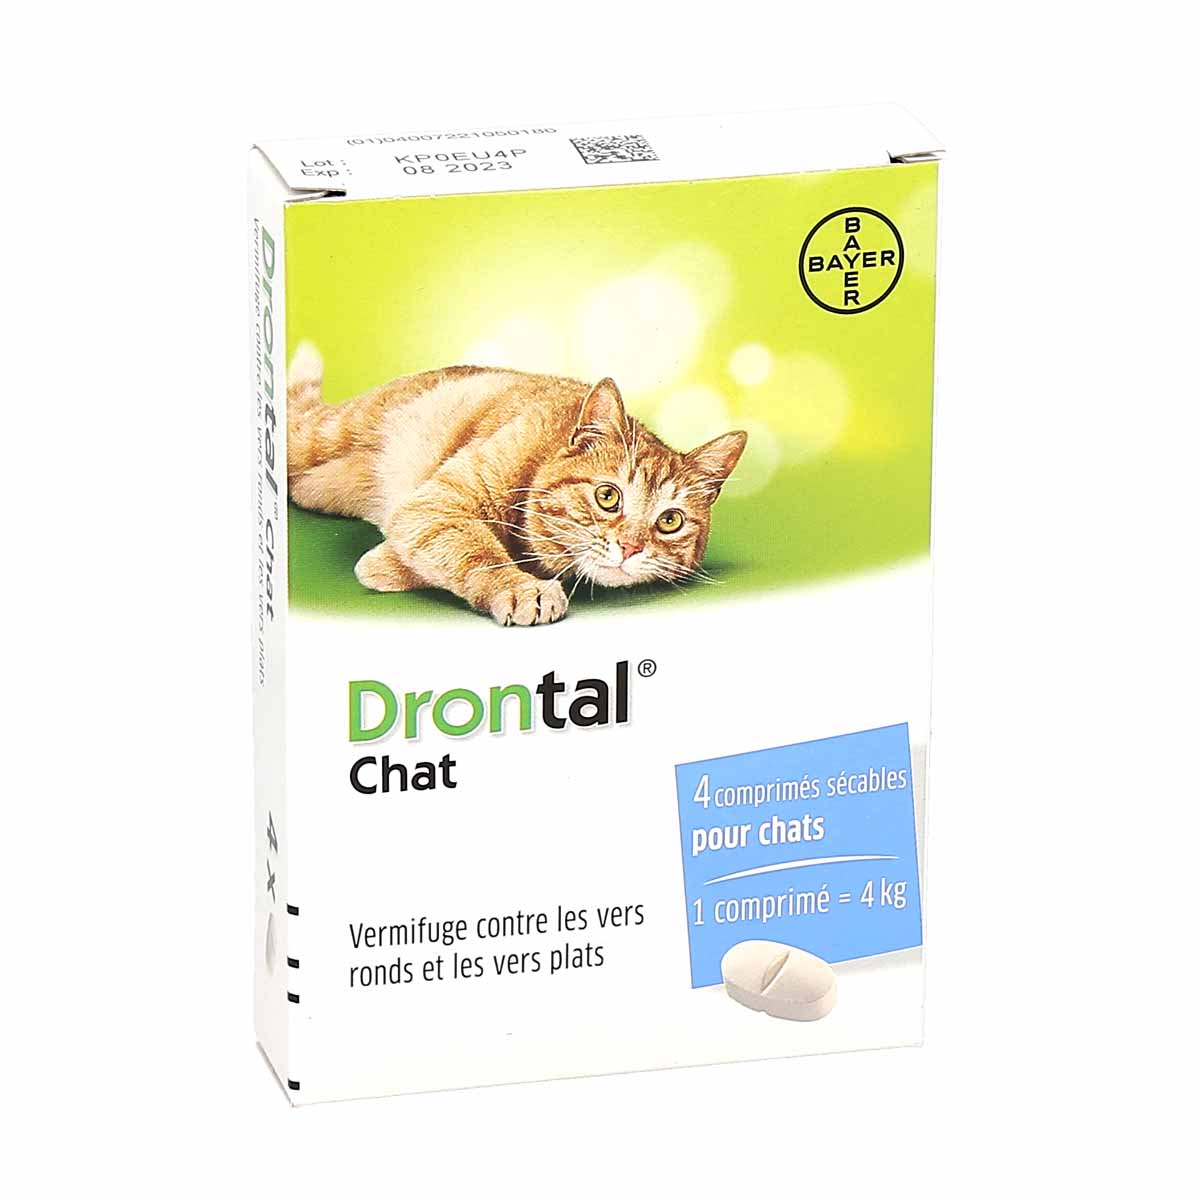 Drontal Chat - Vermifuge chat - 4 comprimés - VETOQUINOL